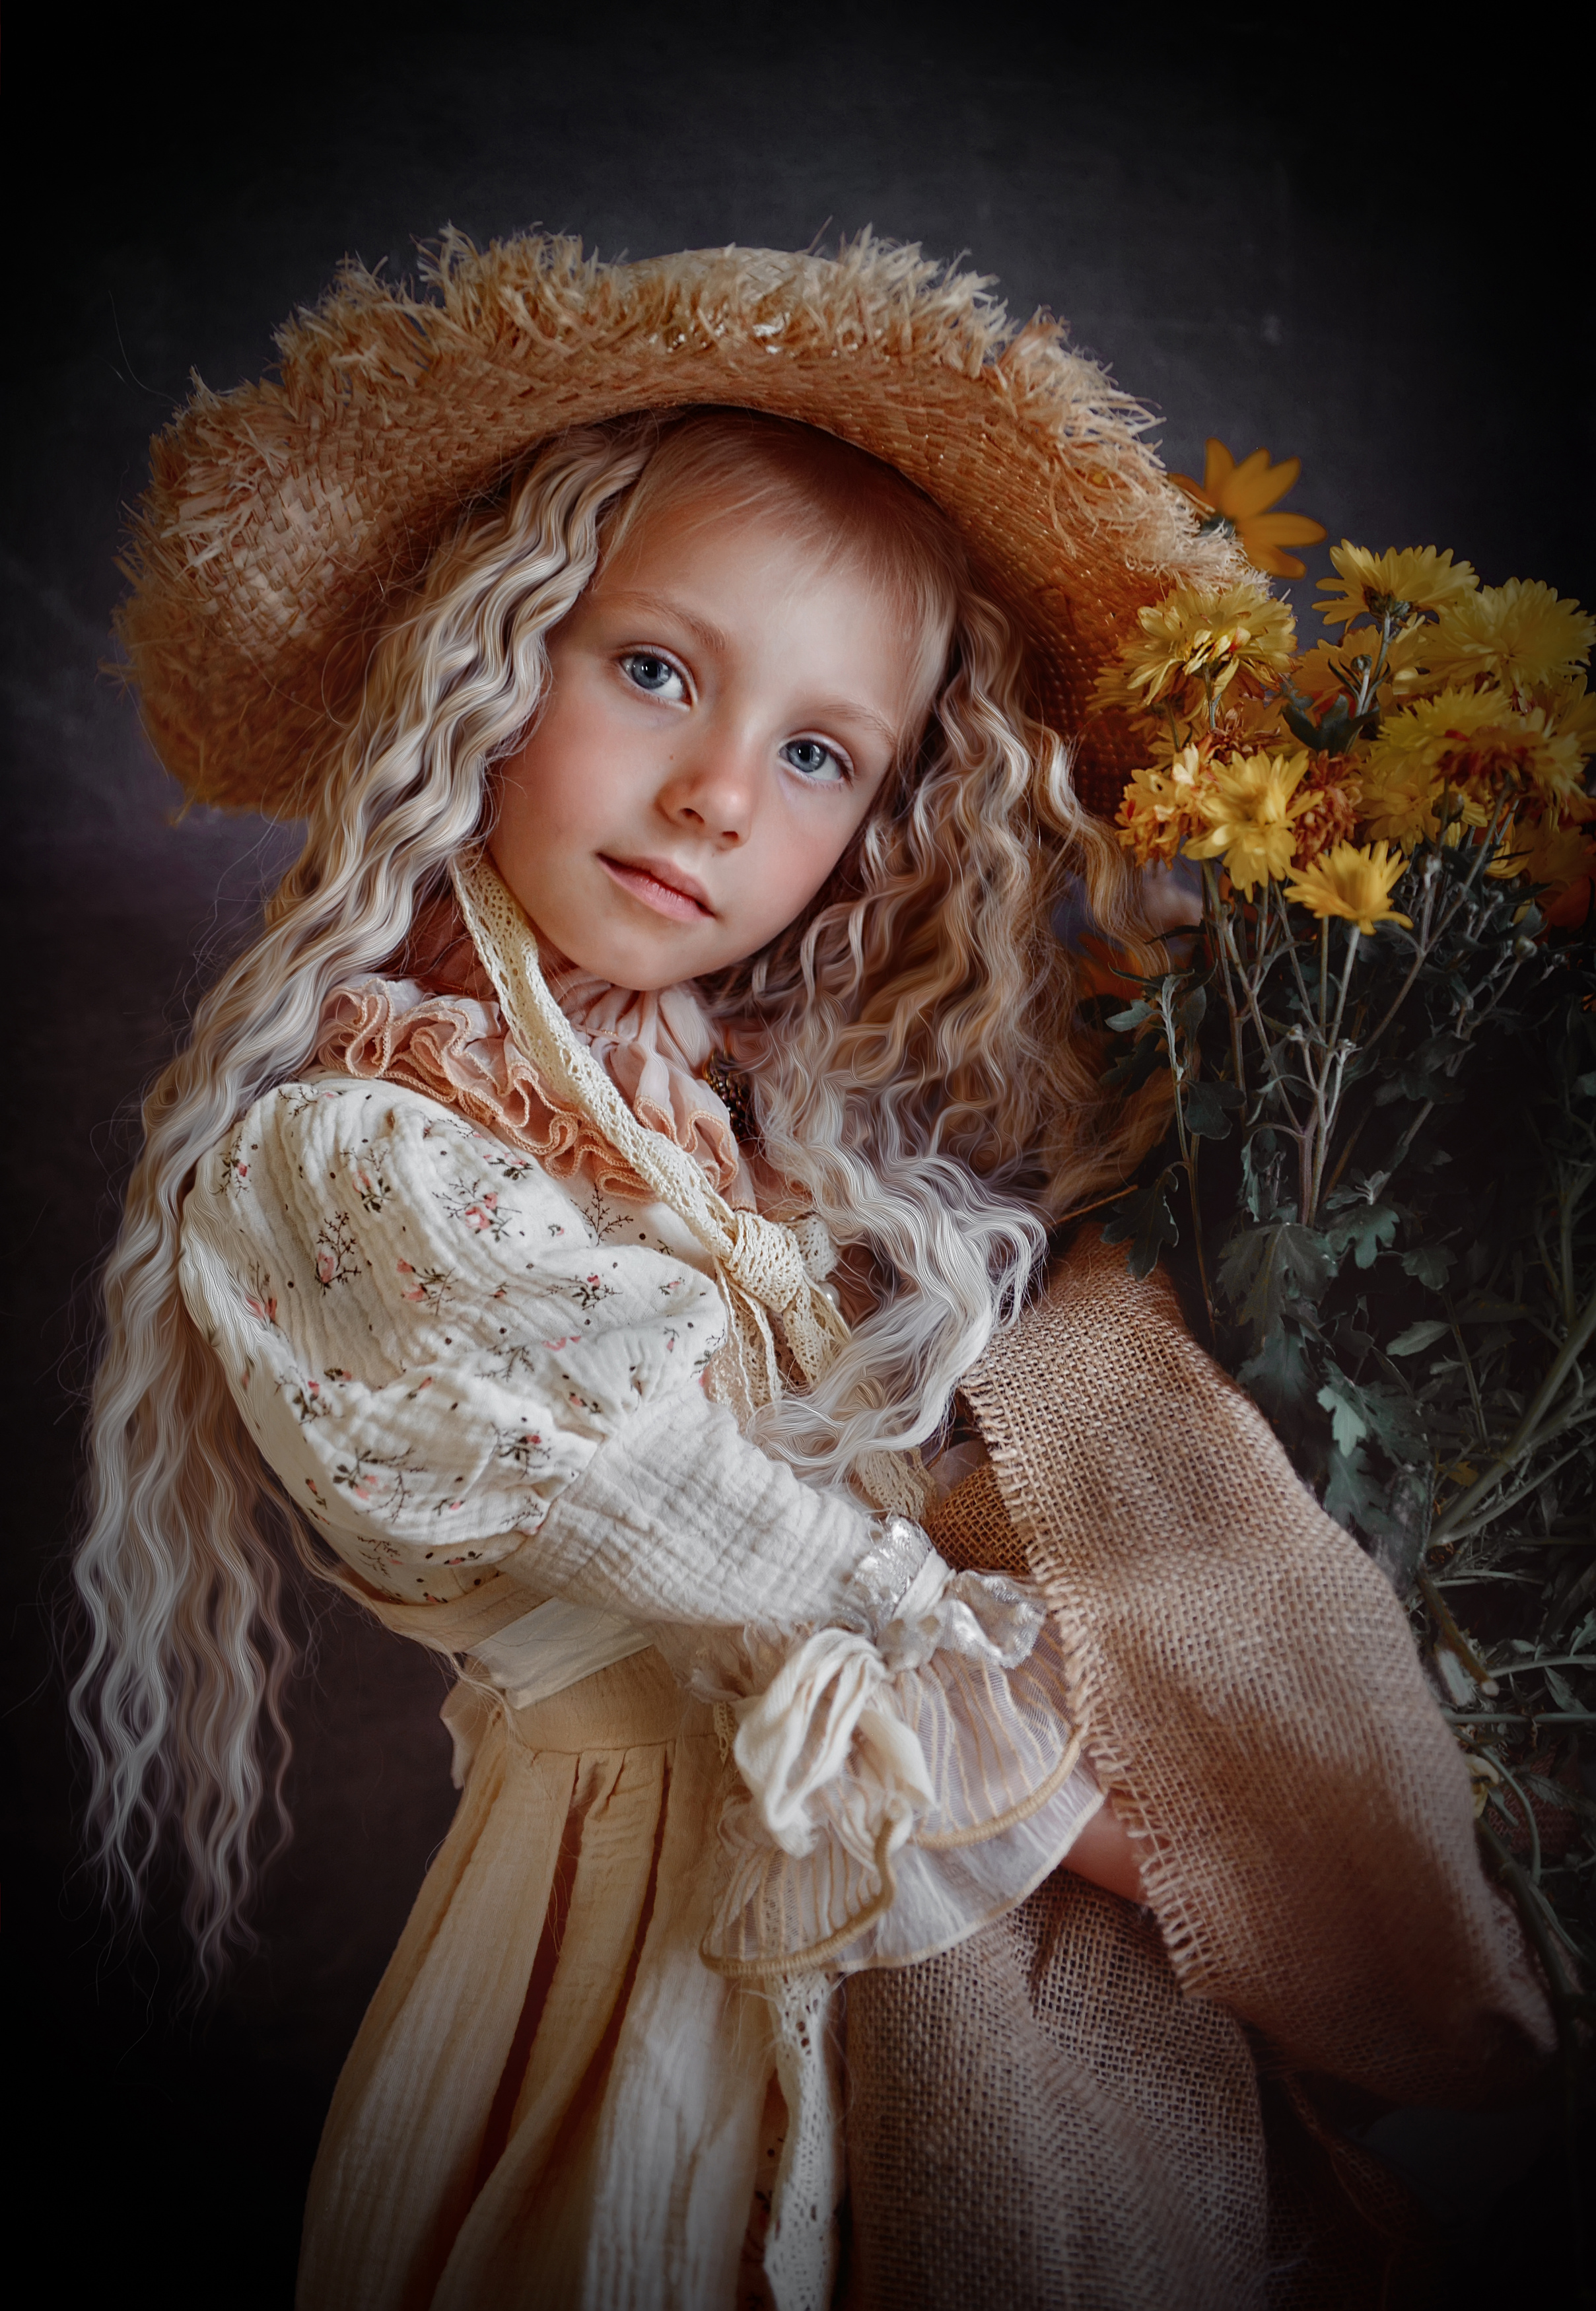 Детский портрет,девочка с цветами,винтажное фото, Татьяна Звада